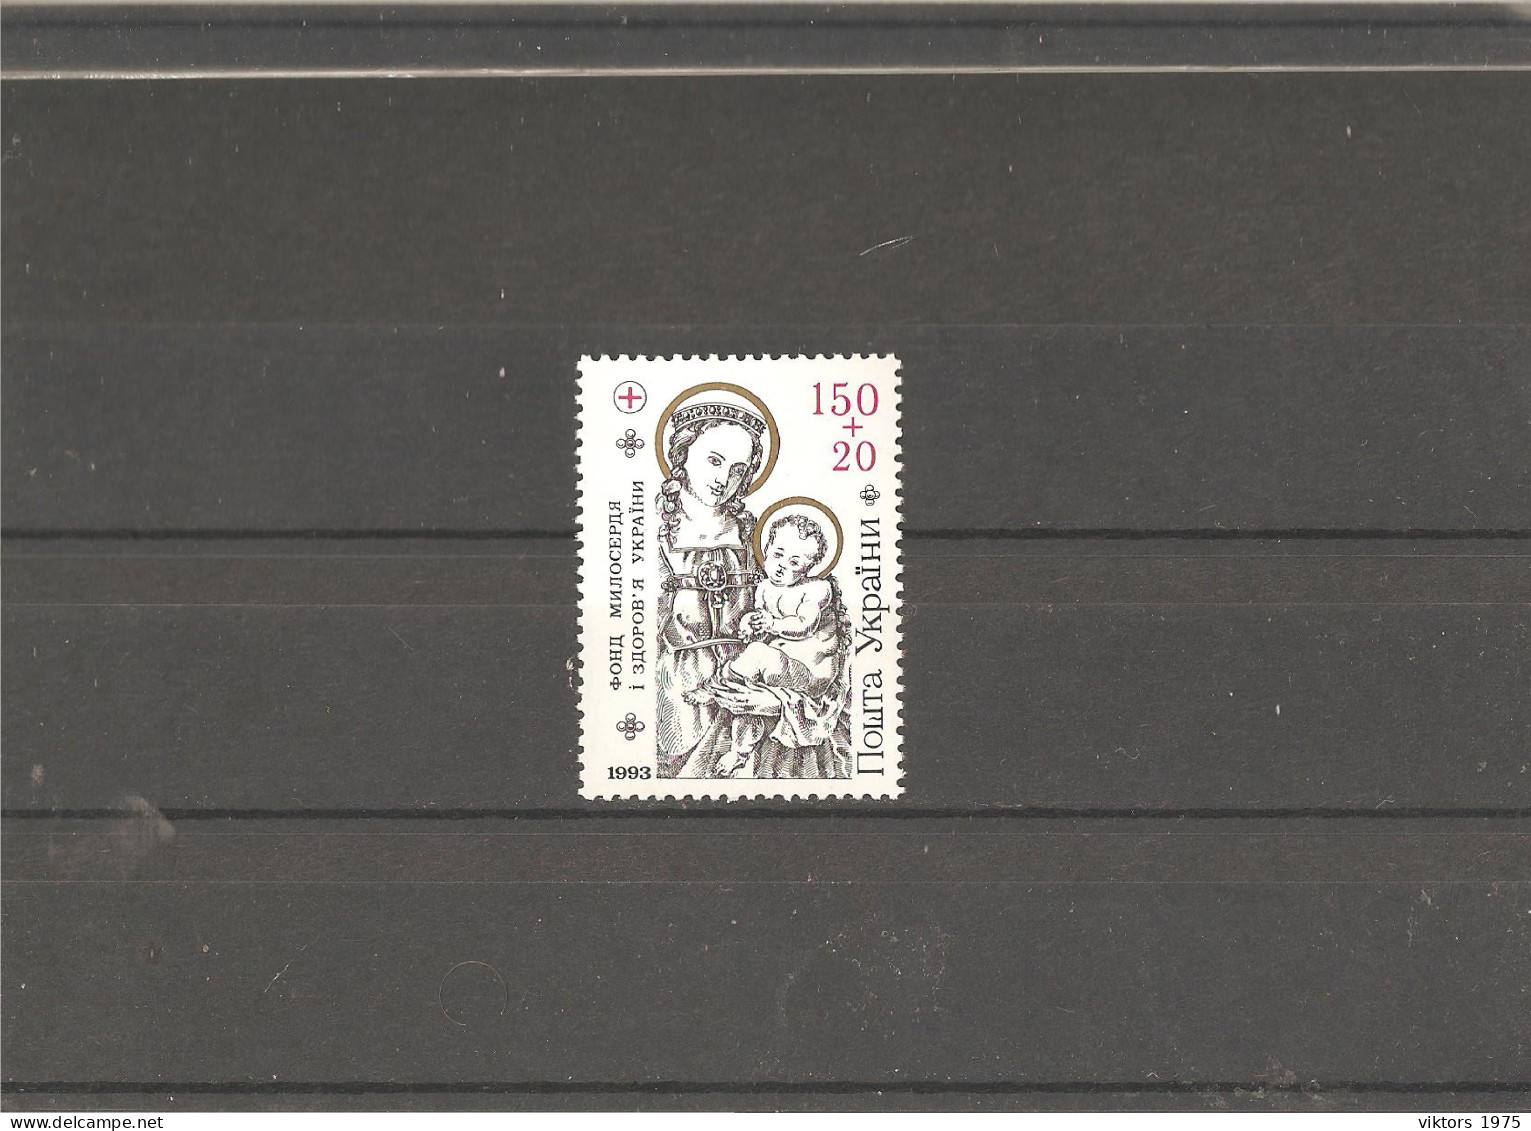 MNH Stamp Nr.111 In MICHEL Catalog - Ukraine